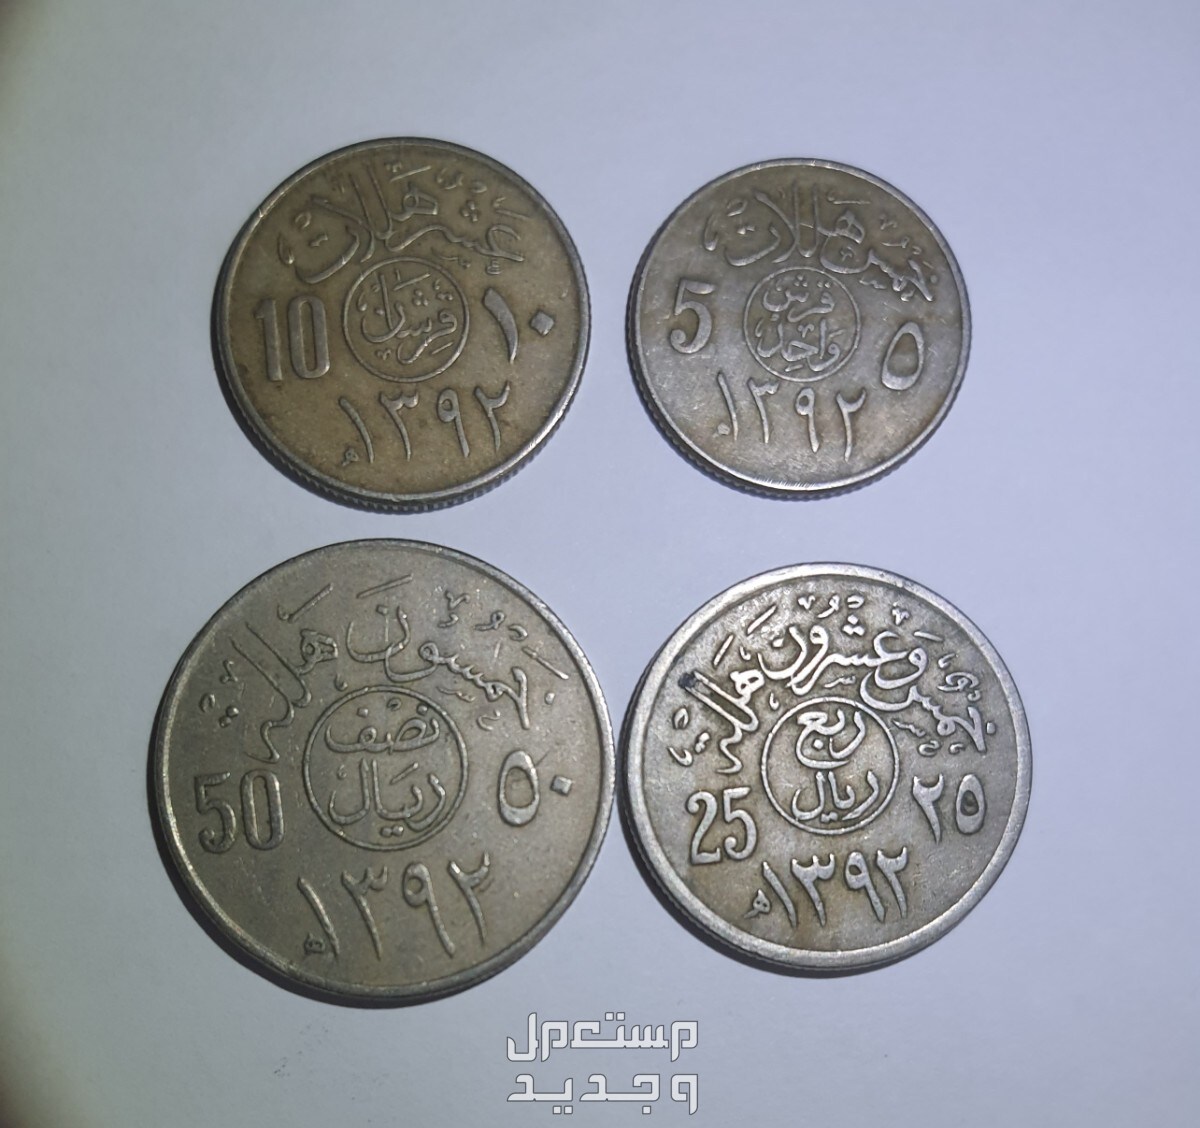 العملة المعدنية عهد الملك فيصل والملك خالد